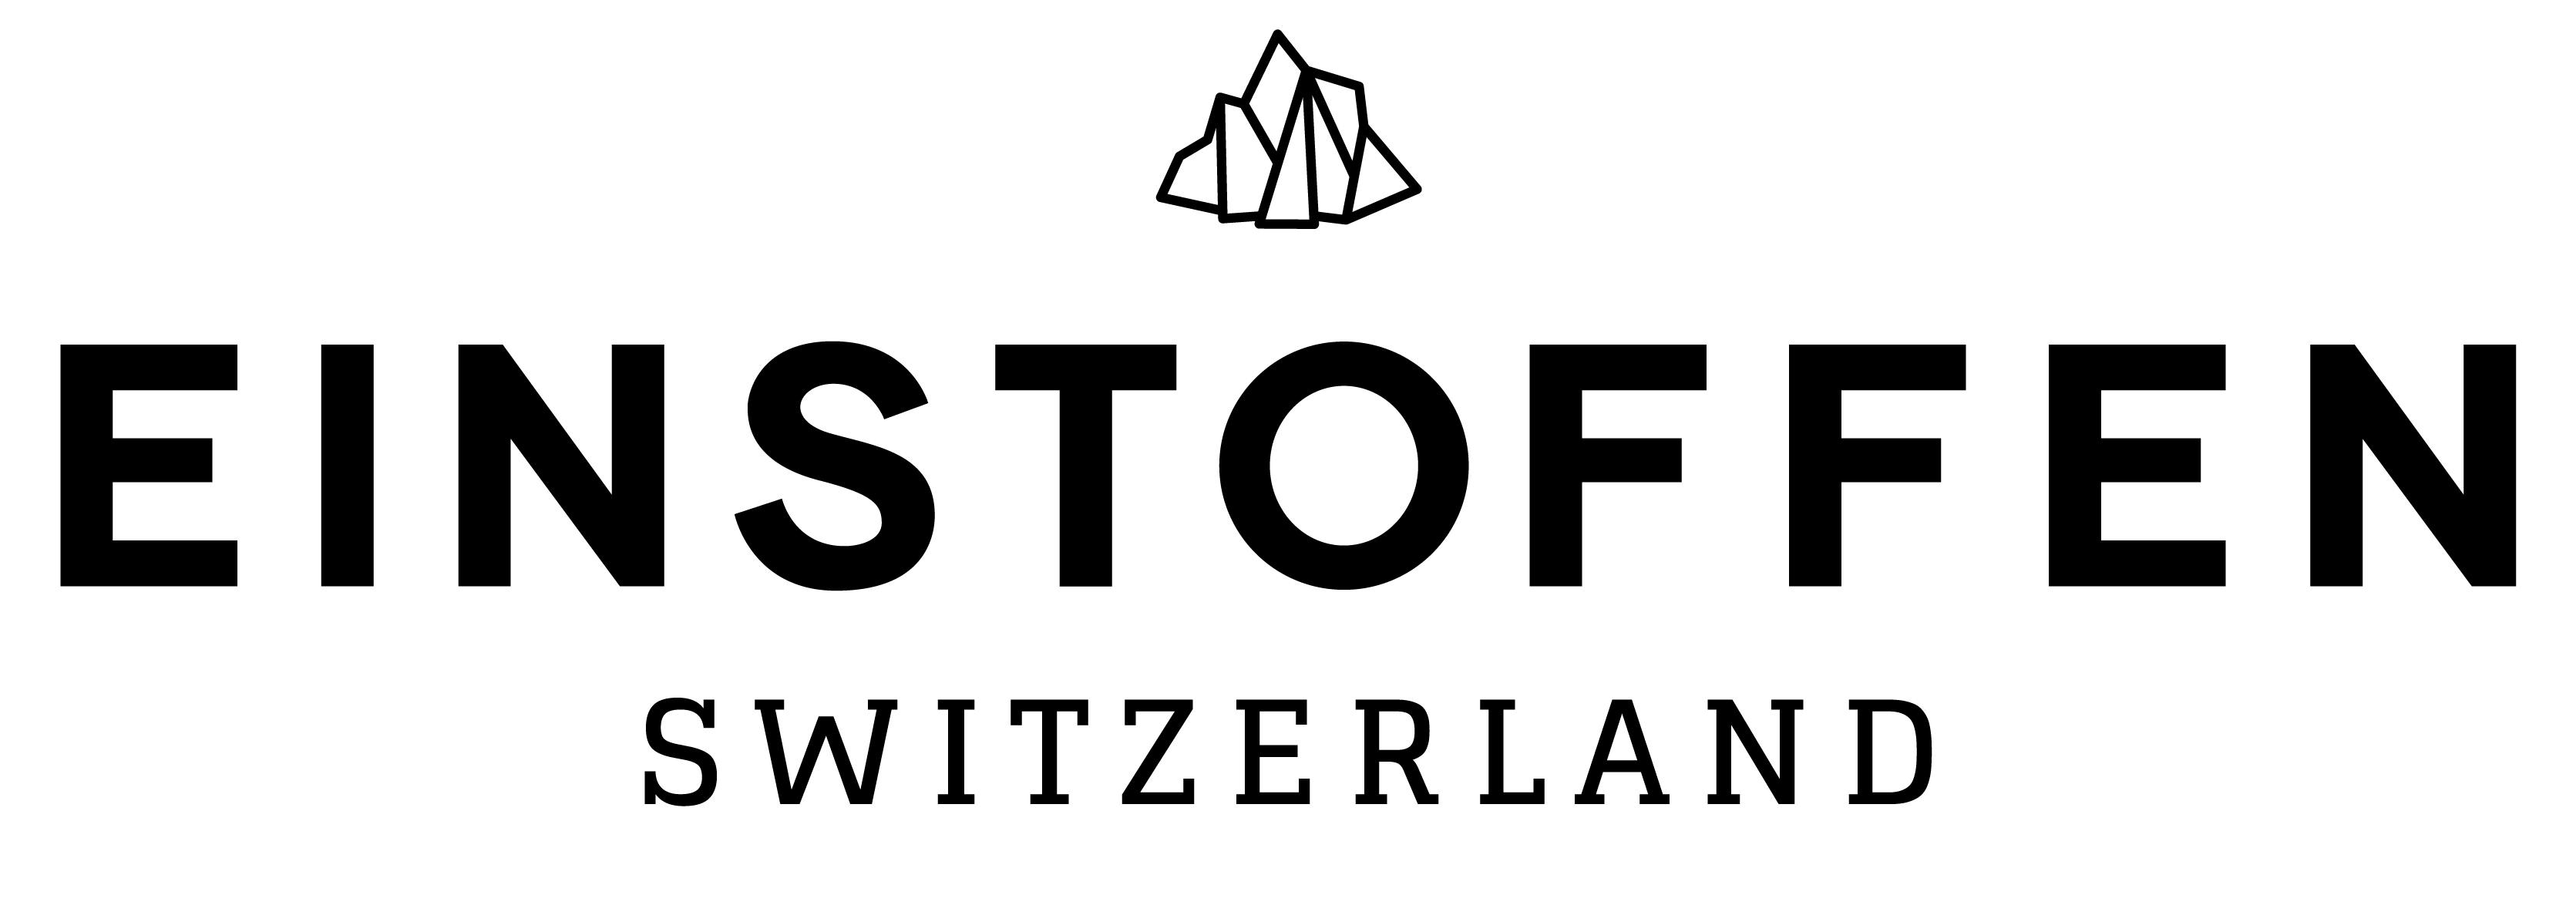 einstoffen switzerland schweiz suisse brillen